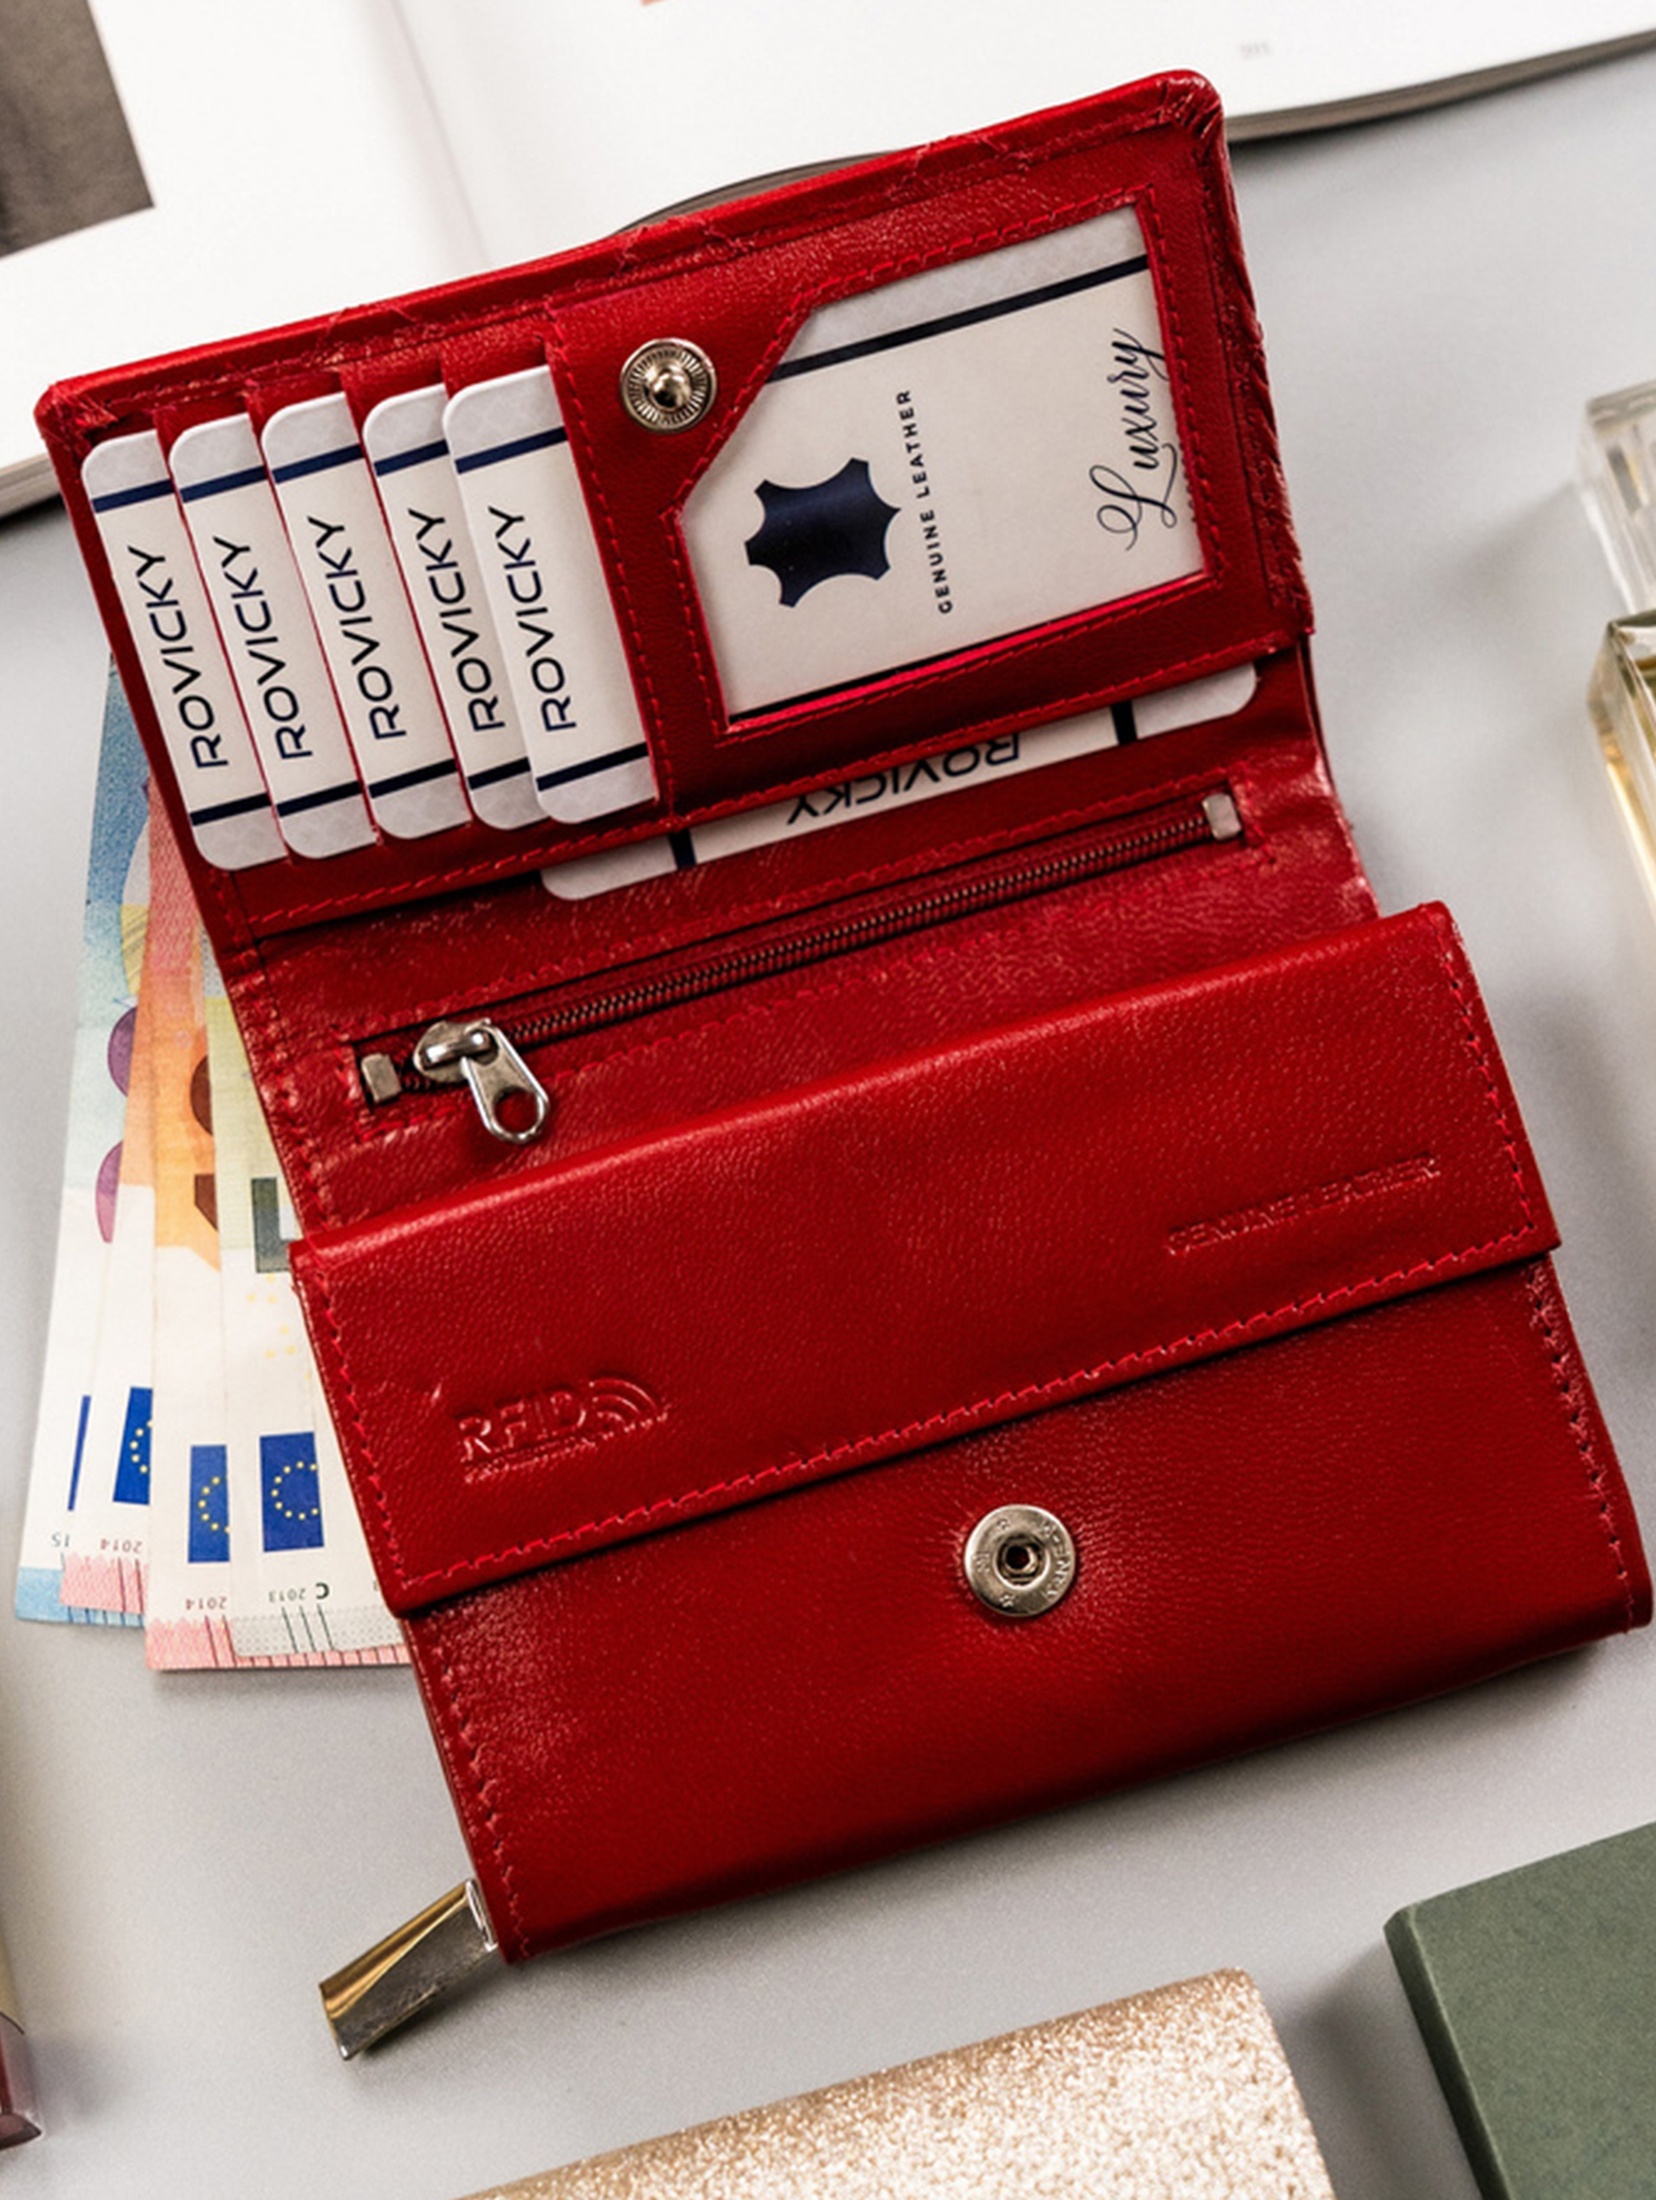 Rovicky skórzany portfel damski zamykany na zatrzask- czerwony